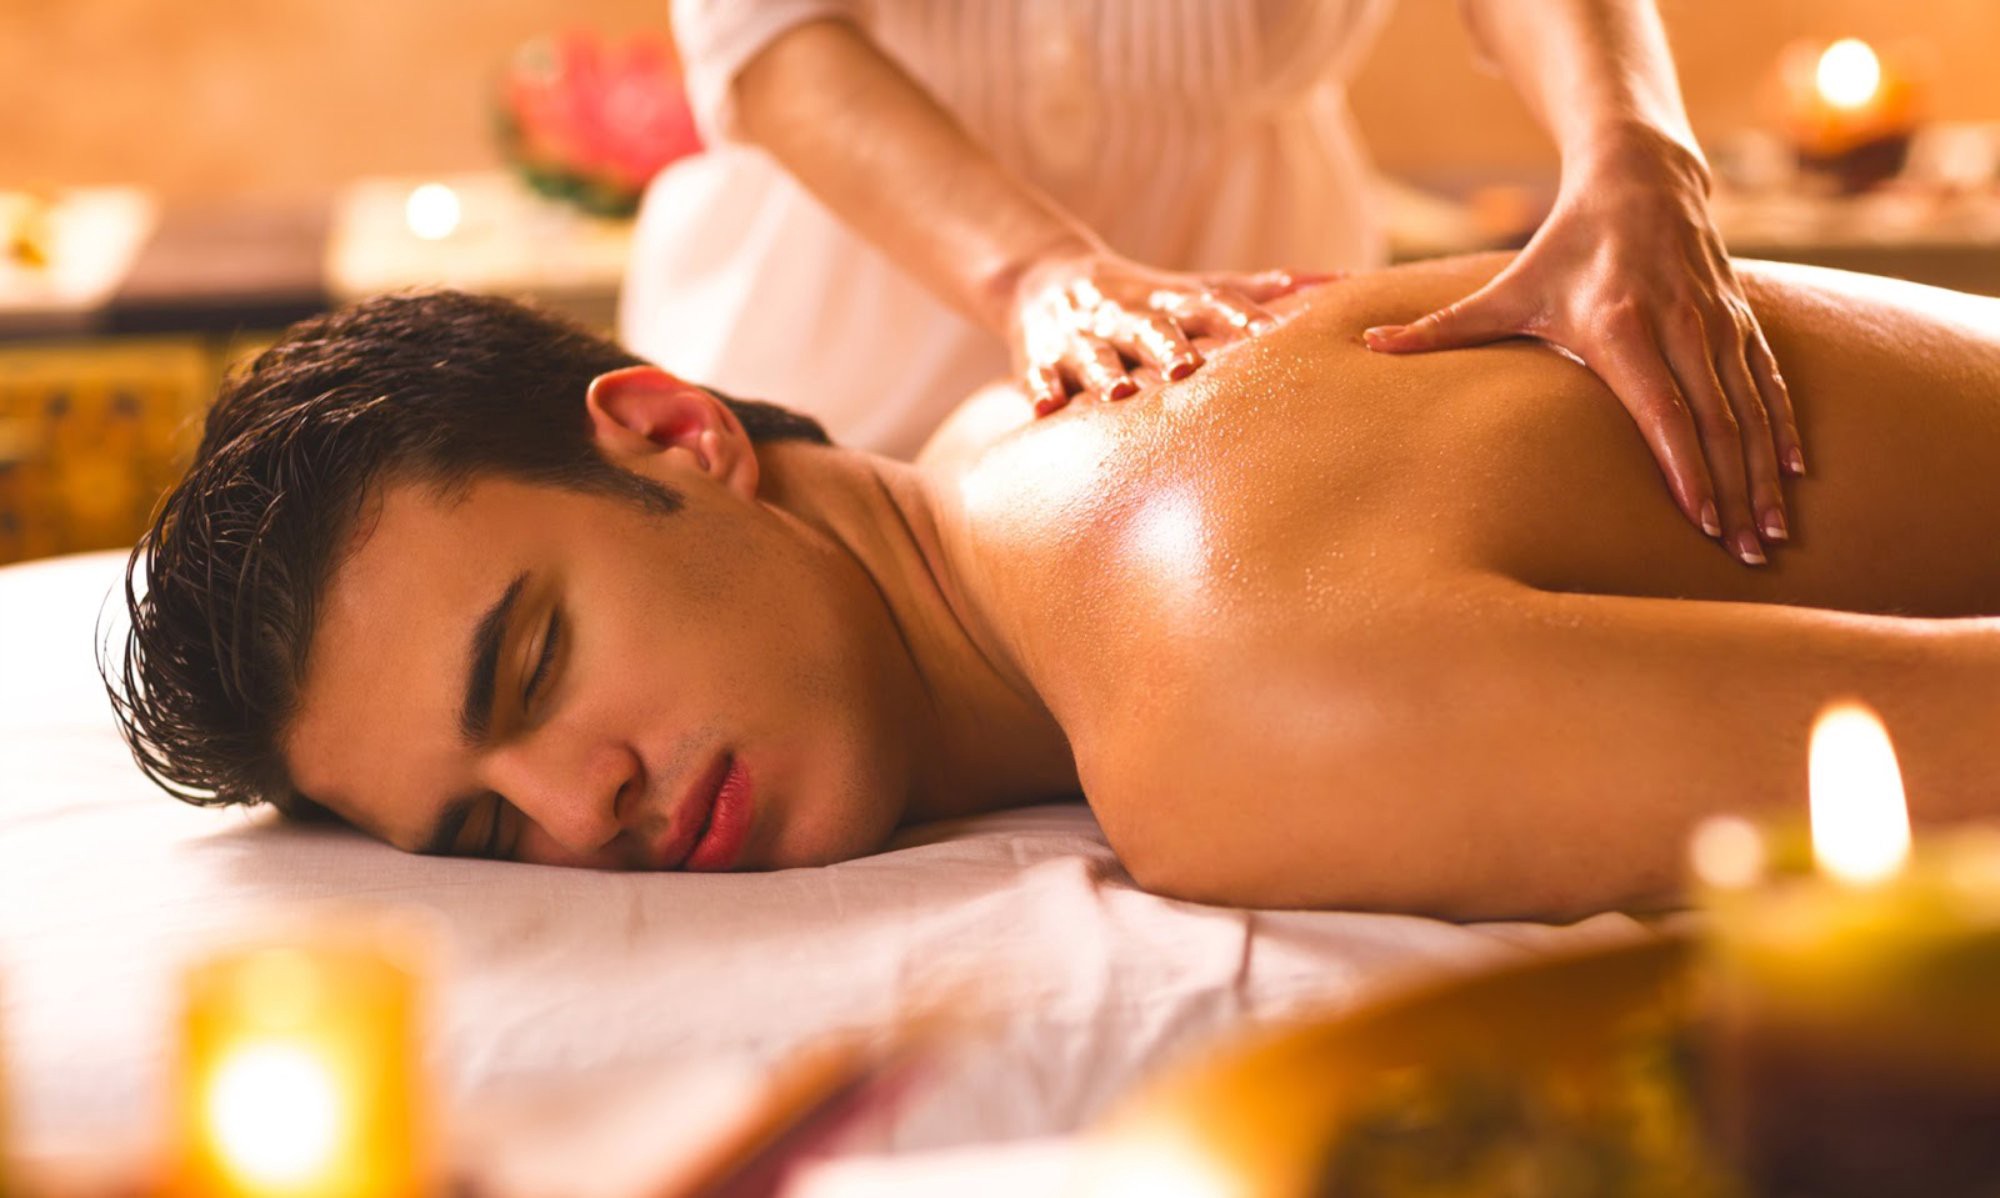 So sánh ghế massage và massage trị liệu - Phương pháp nào tốt hơn?